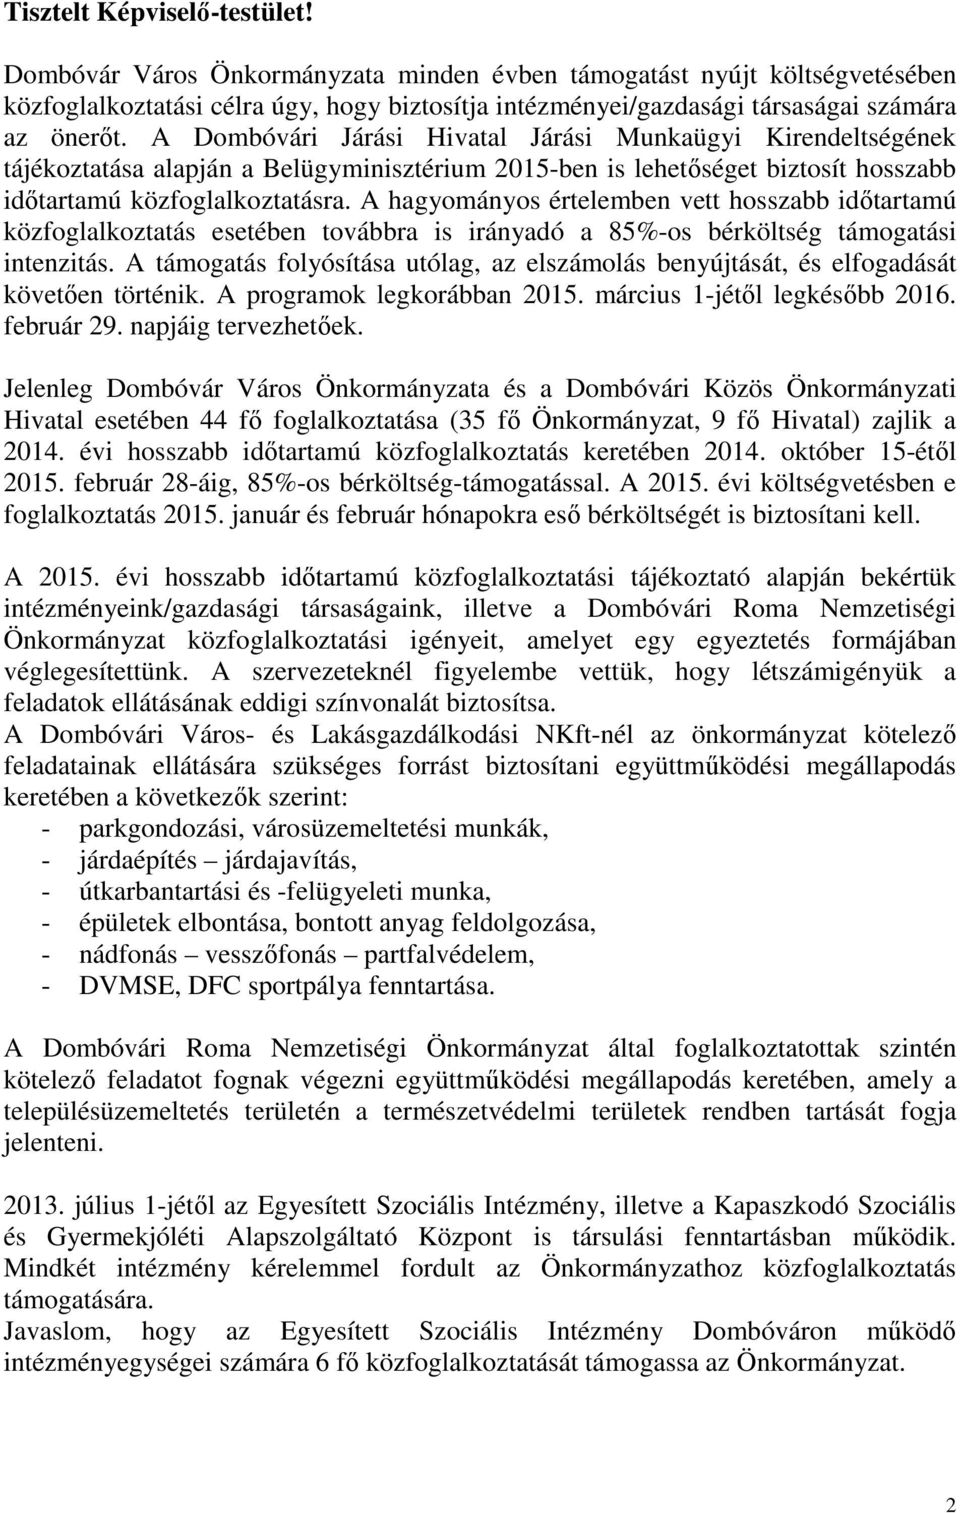 A Dombóvári Járási Hivatal Járási Munkaügyi Kirendeltségének tájékoztatása alapján a Belügyminisztérium 2015-ben is lehetőséget biztosít hosszabb időtartamú közfoglalkoztatásra.